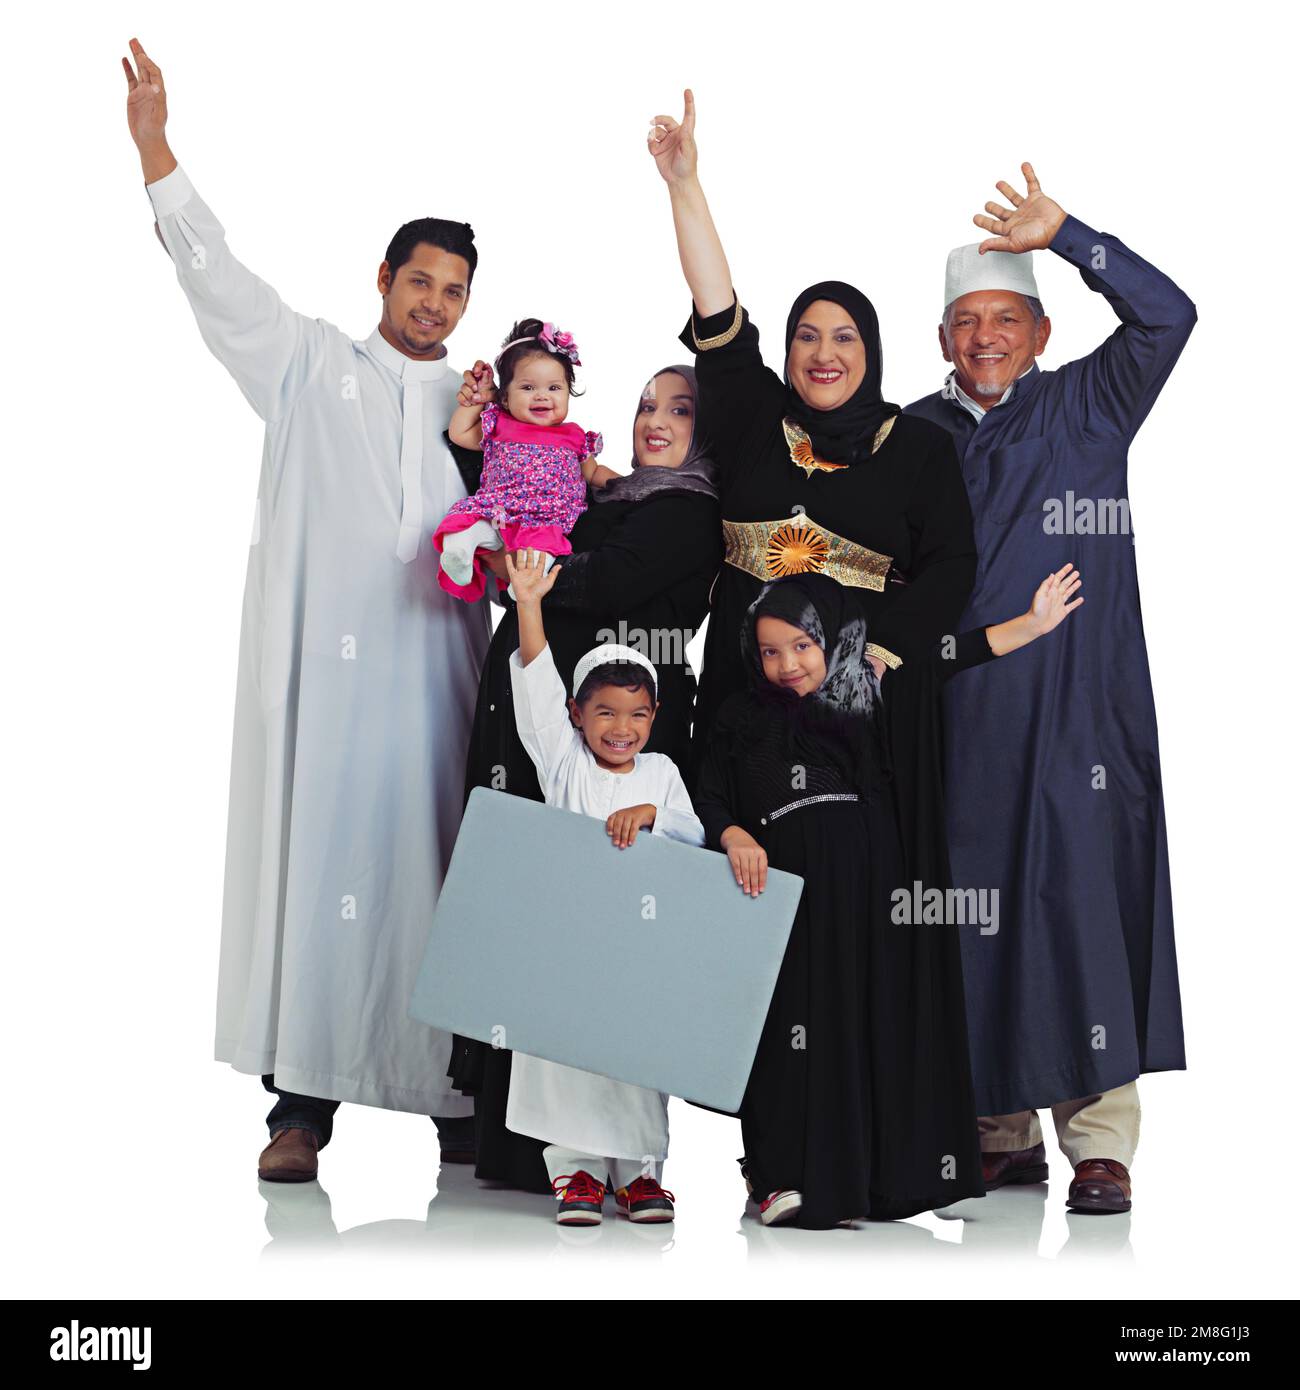 La famille musulmane, gagnant un portrait et un espace poster avec des enfants et des parents célèbrent la religion islamique. Femmes, hommes et enfants arabes avec bannière pour Banque D'Images